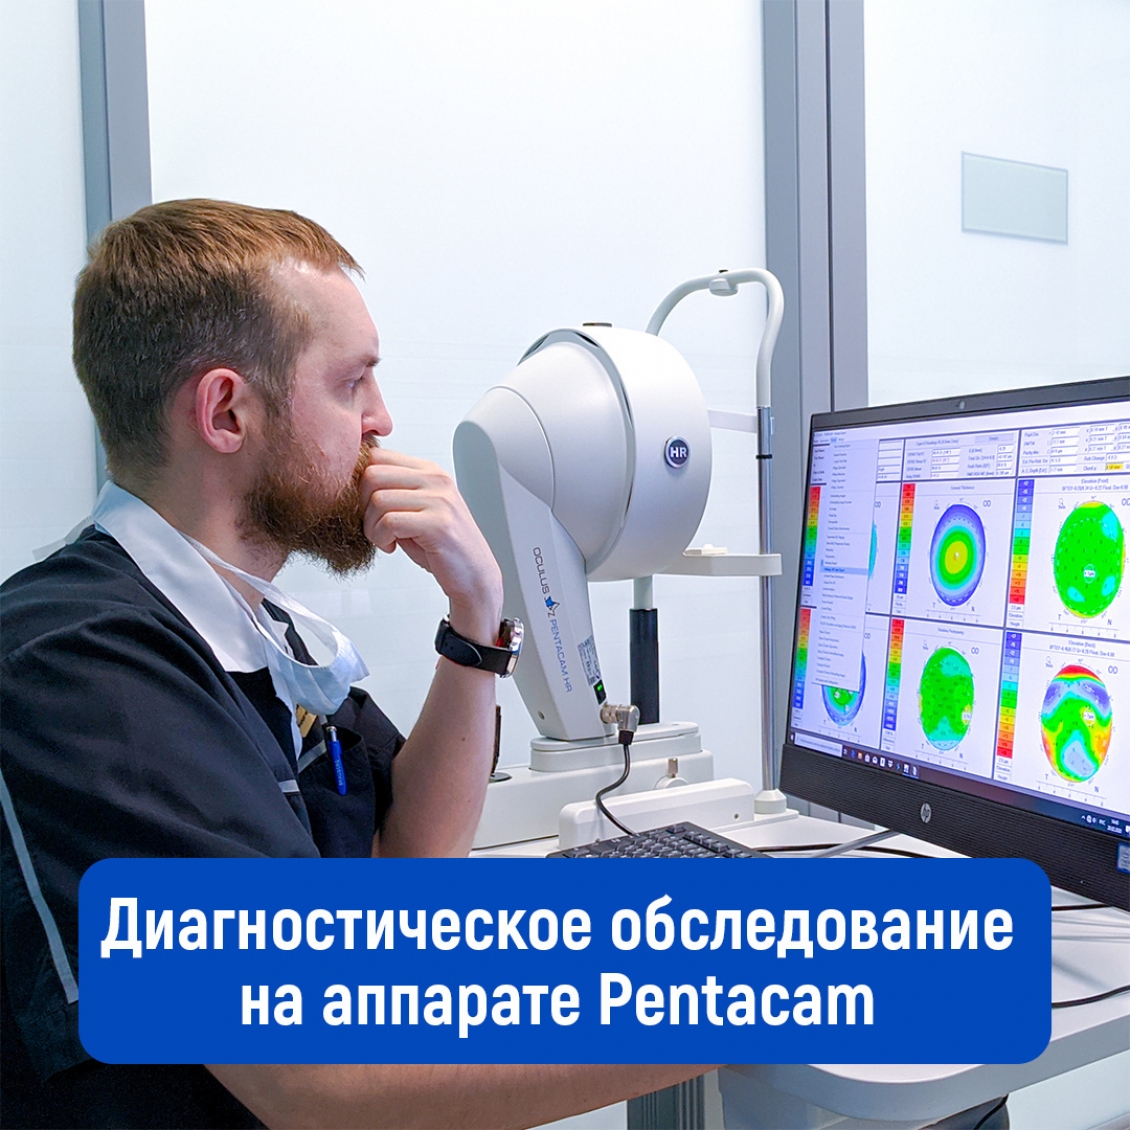 Диагностическое обследование на аппарате Pentacam перед лазерной коррекцией зрения.